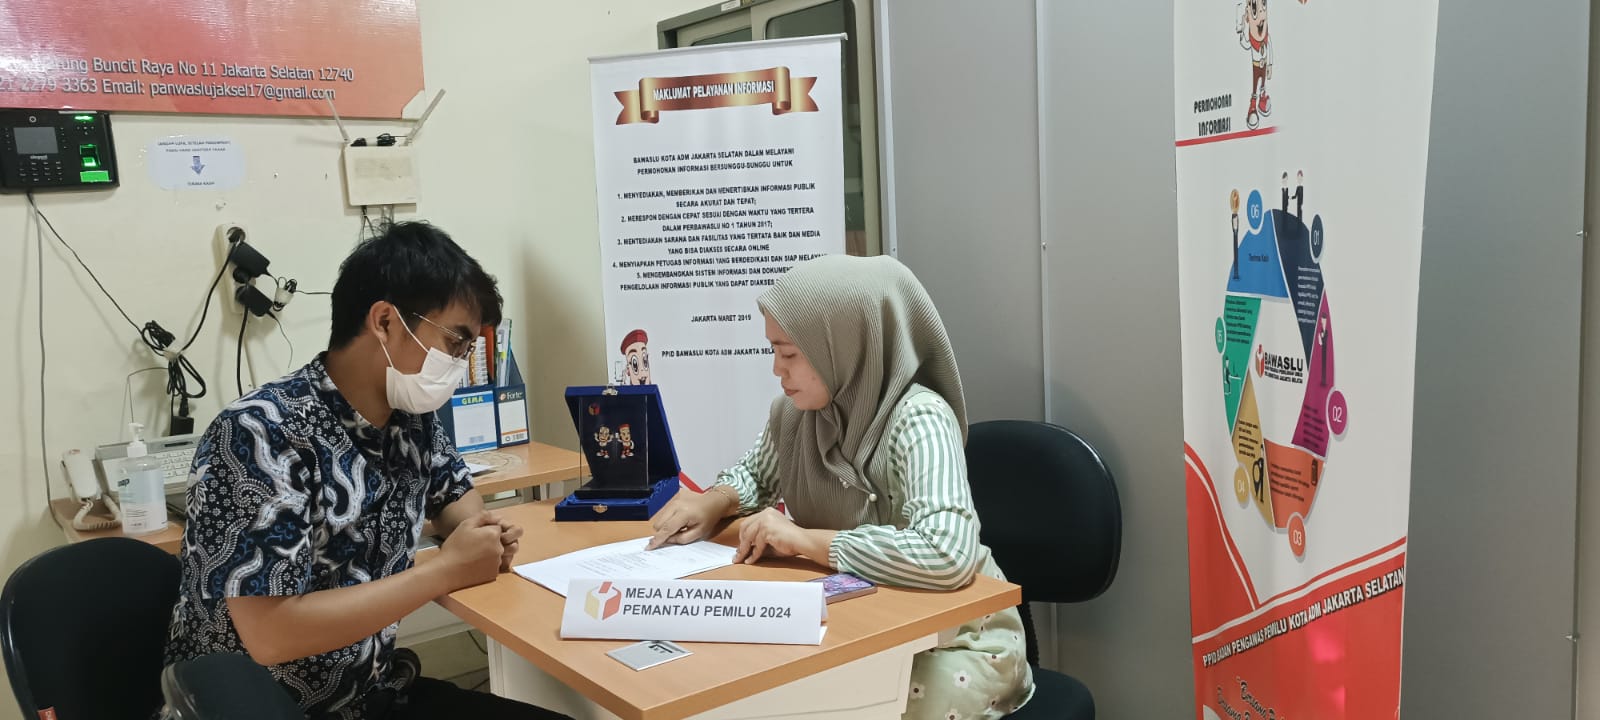 Bawaslu RI Buka Pendaftaran Pemantau Pemilu, Muchtar: Meja Layanan Pemantau Pemilu Tersedia di Bawaslu Jakarta Selatan